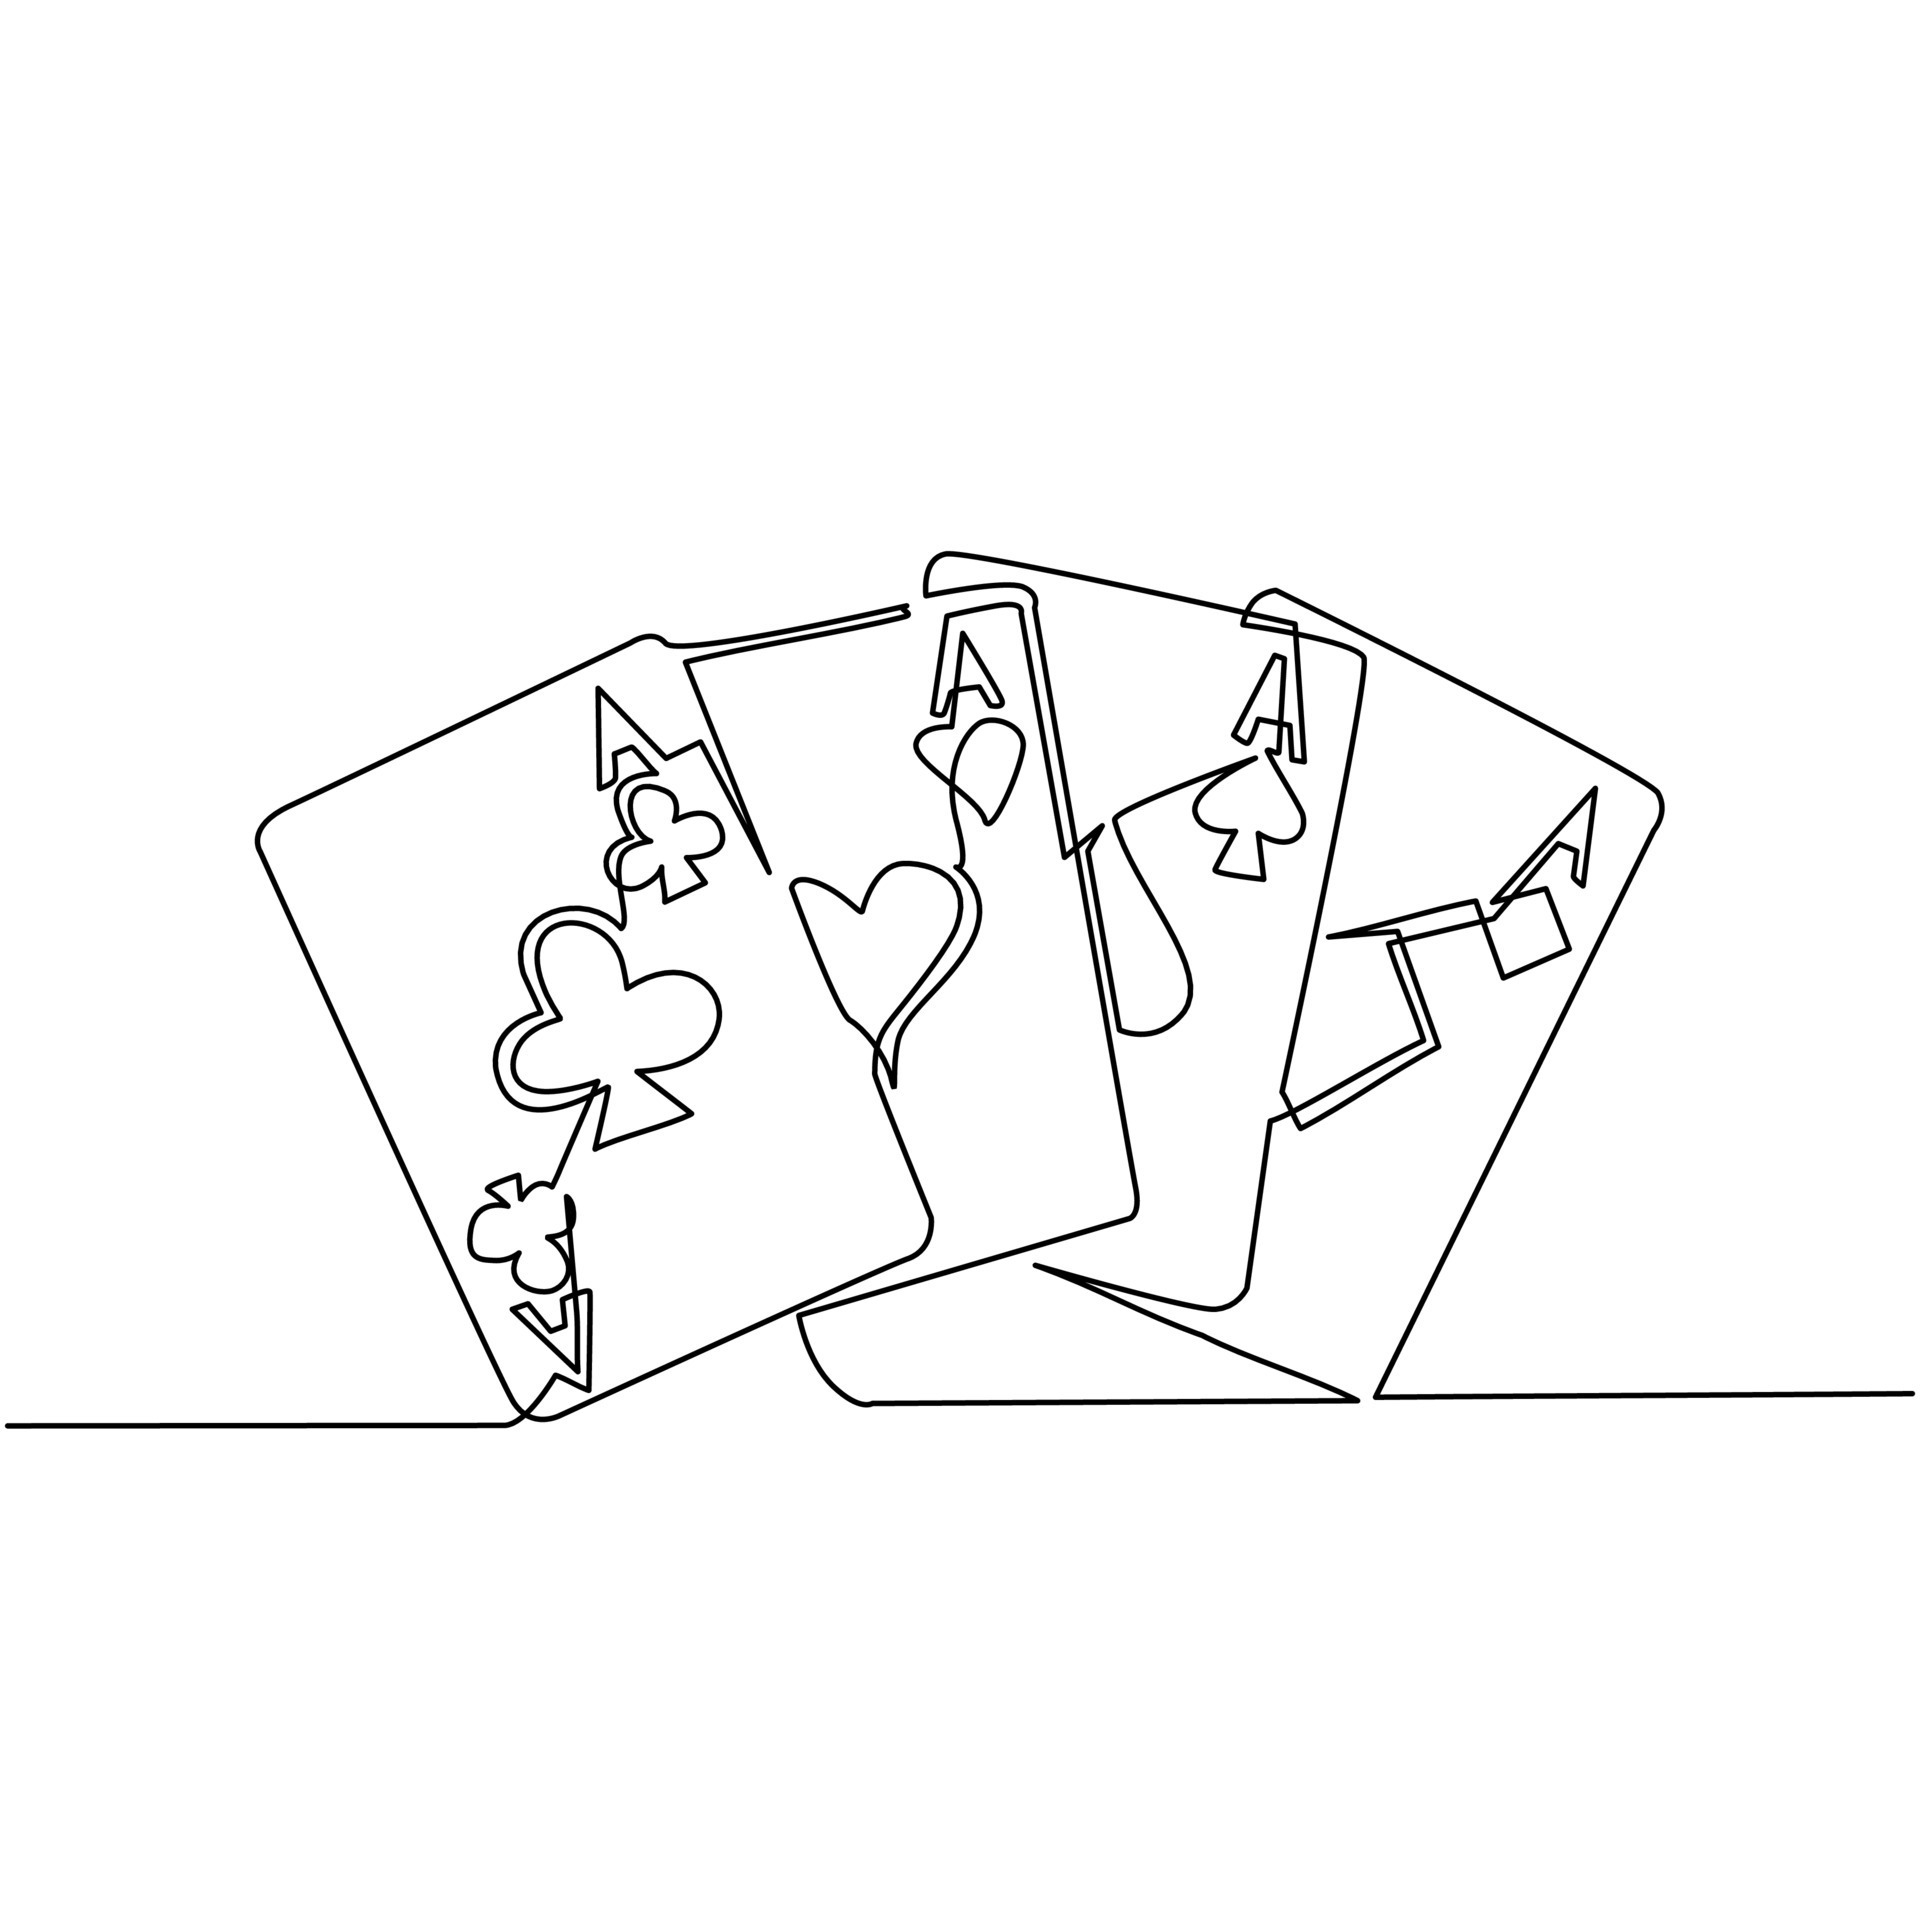 Quatro cartas de jogar em fundo branco mostrando seis - vetor de copas,  paus, espadas e ouros